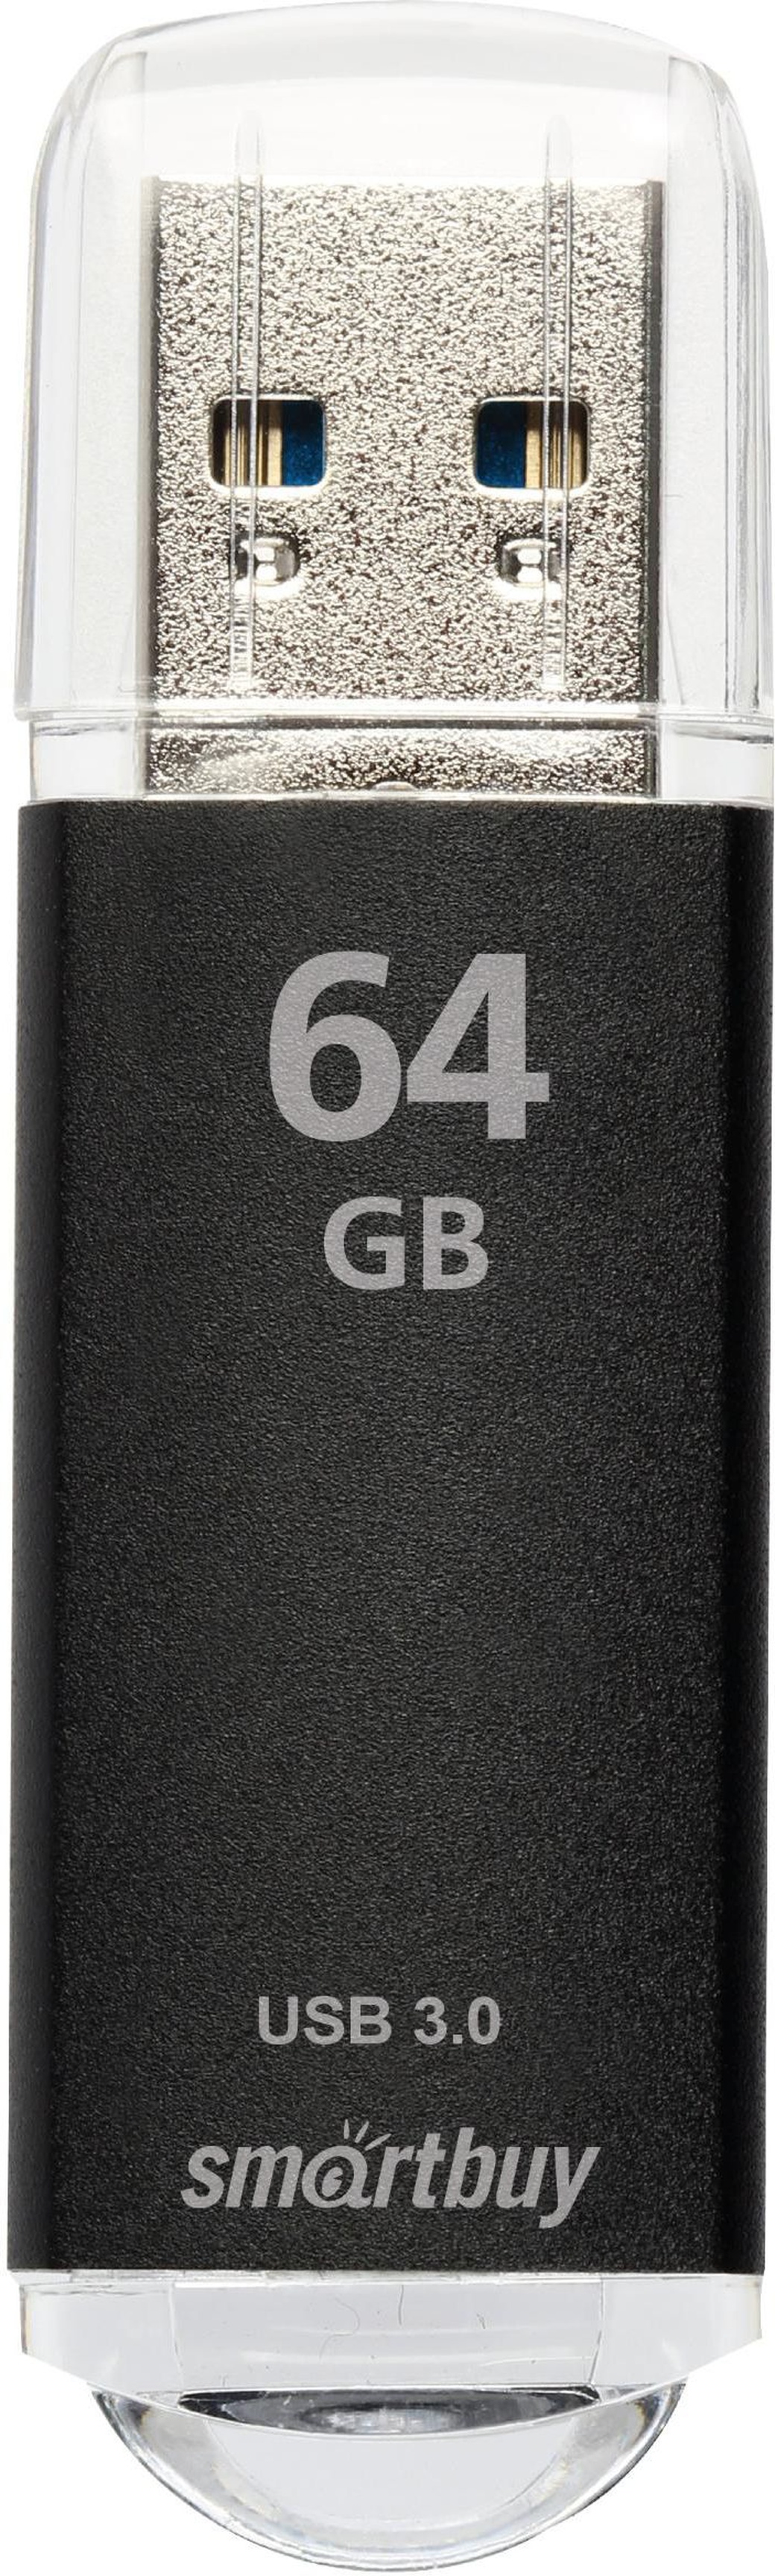 Флеш-накопитель Smartbuy V-Cut USB 3.0 64GB, черный фото